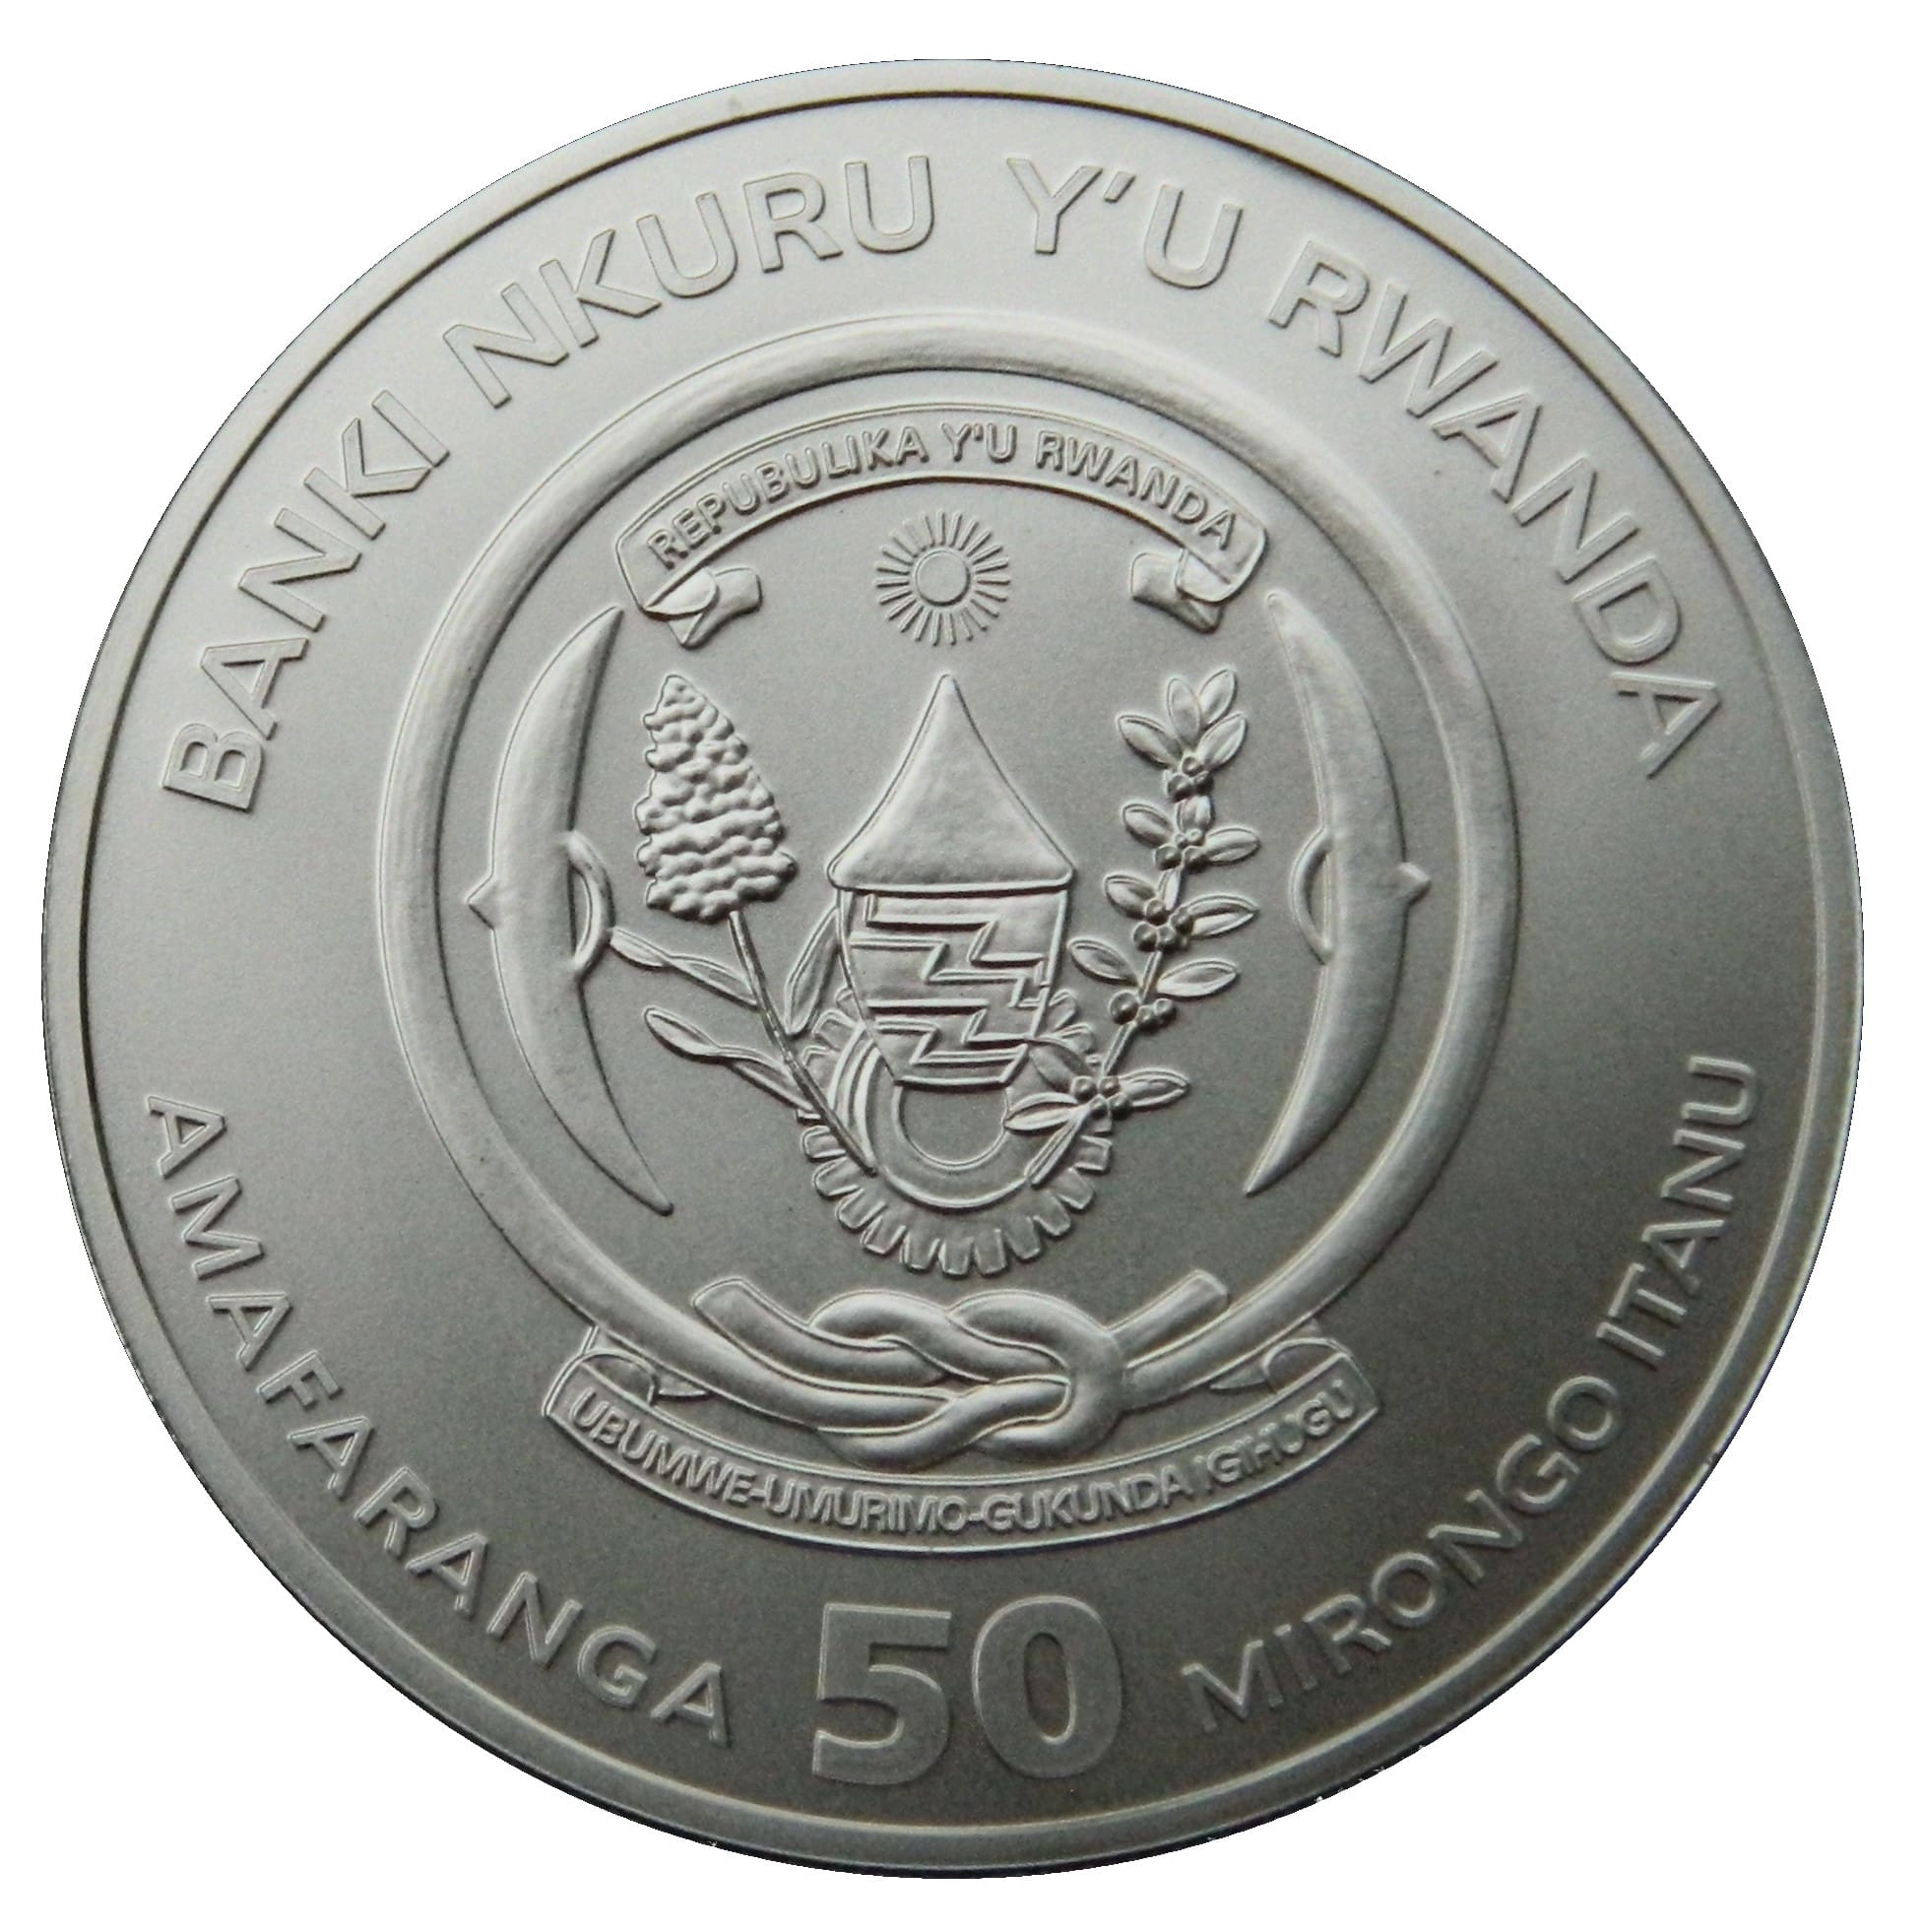 2020 Galago African Ounce 1oz Silver BU Coin Obverse View